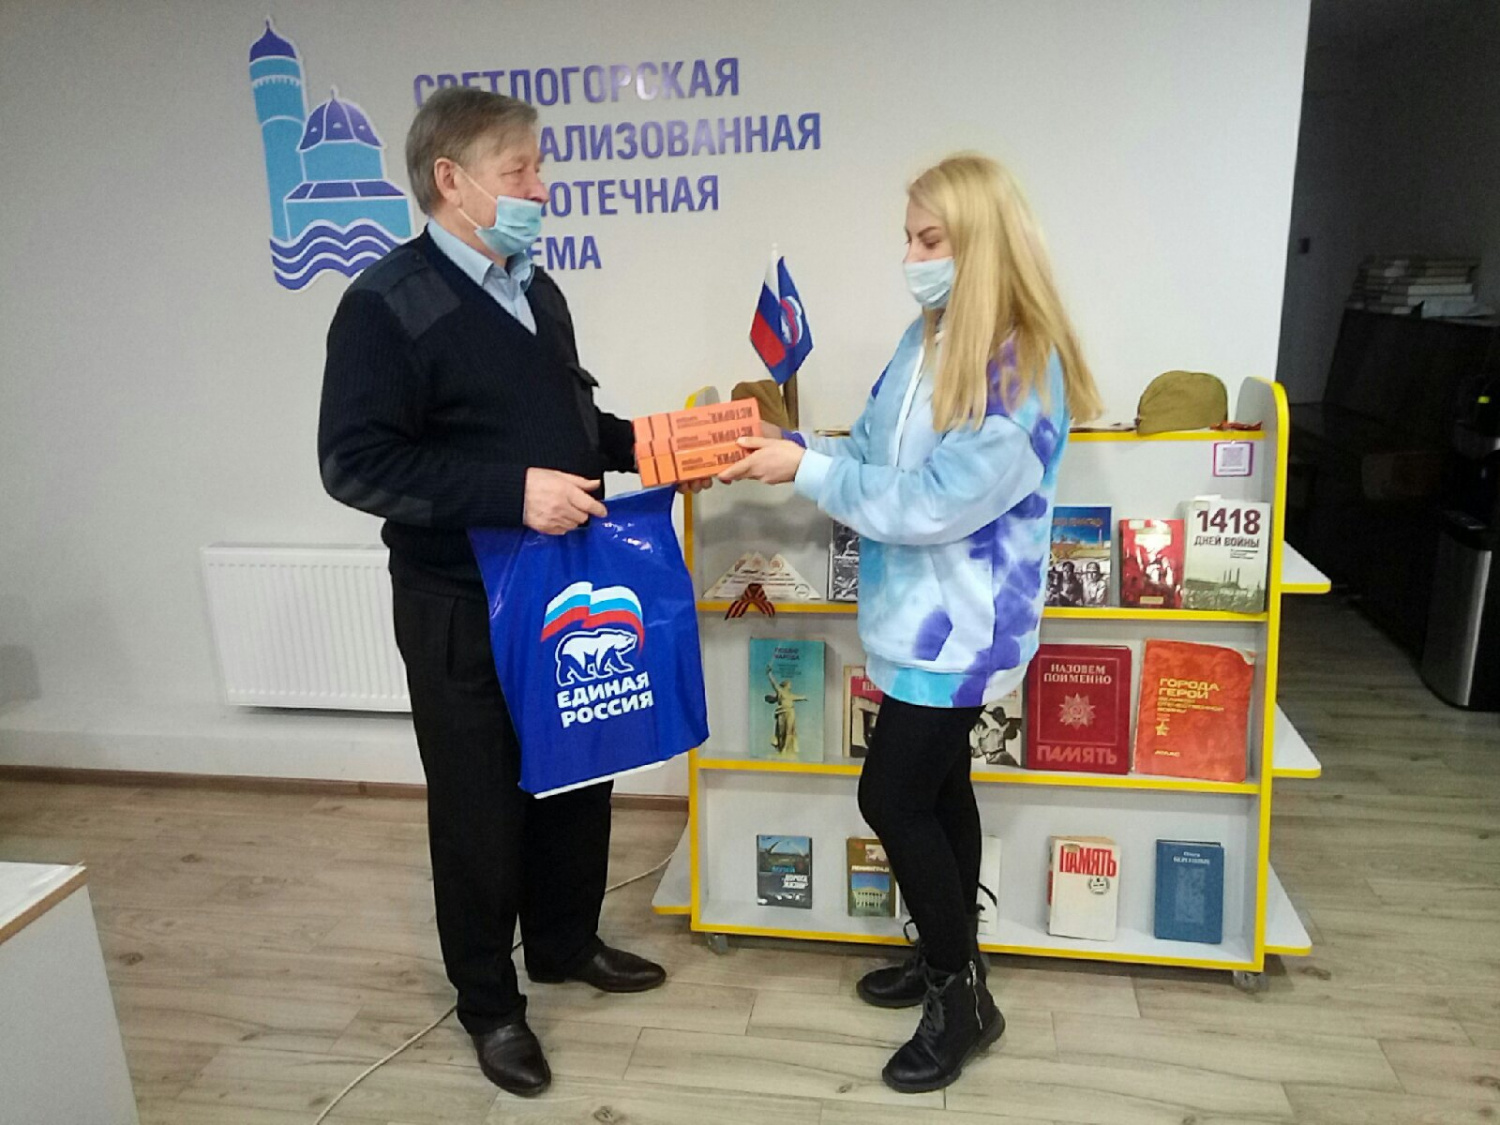 Книги «История, рассказанная народом» переданы в городскую библиотеку Светлогорска